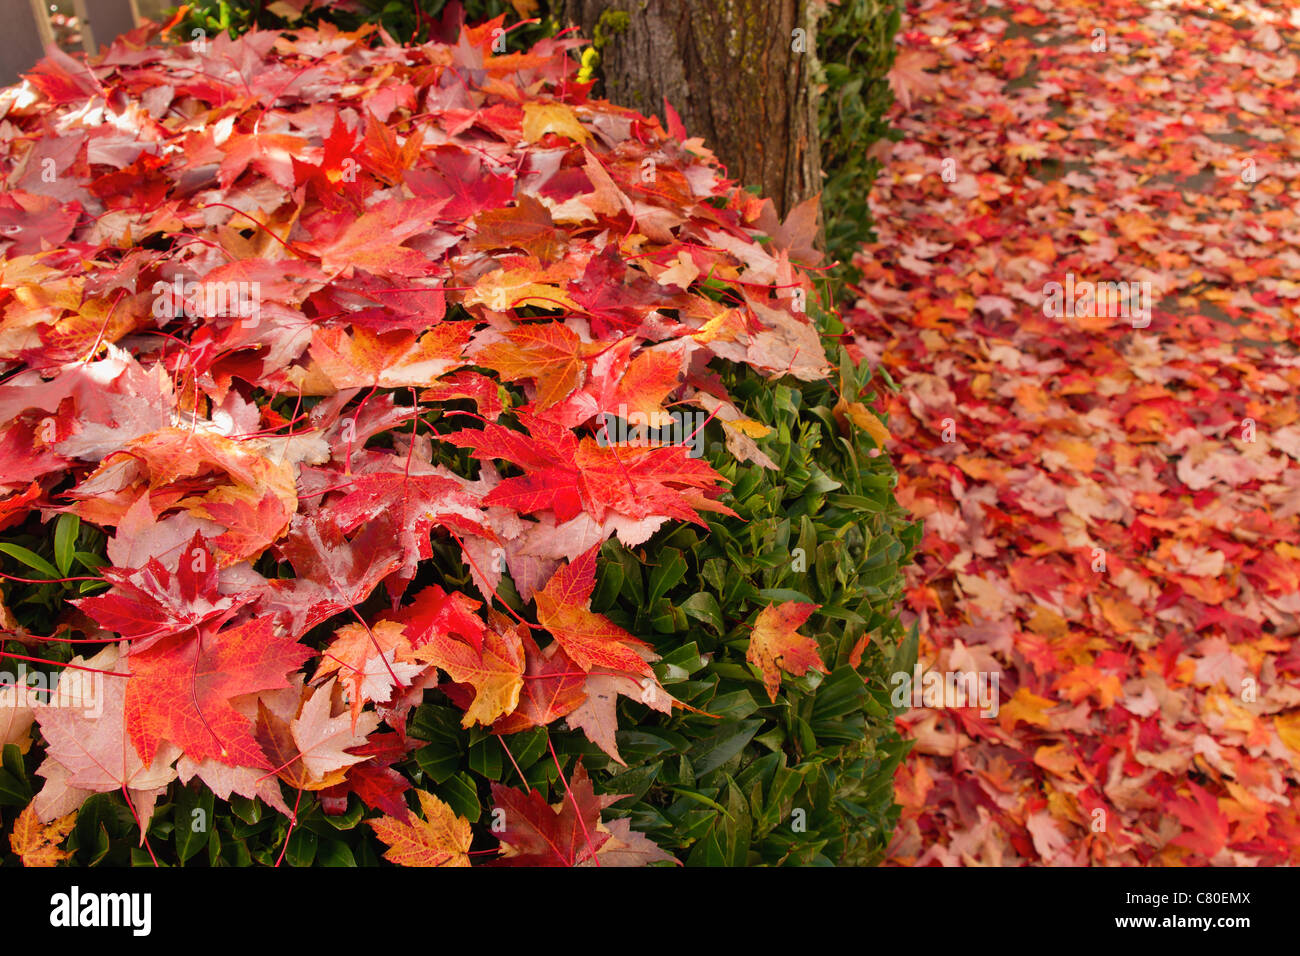 Fallen Maple Tree Leaves on Backyard Garden Shrubs in Autumn Stock Photo